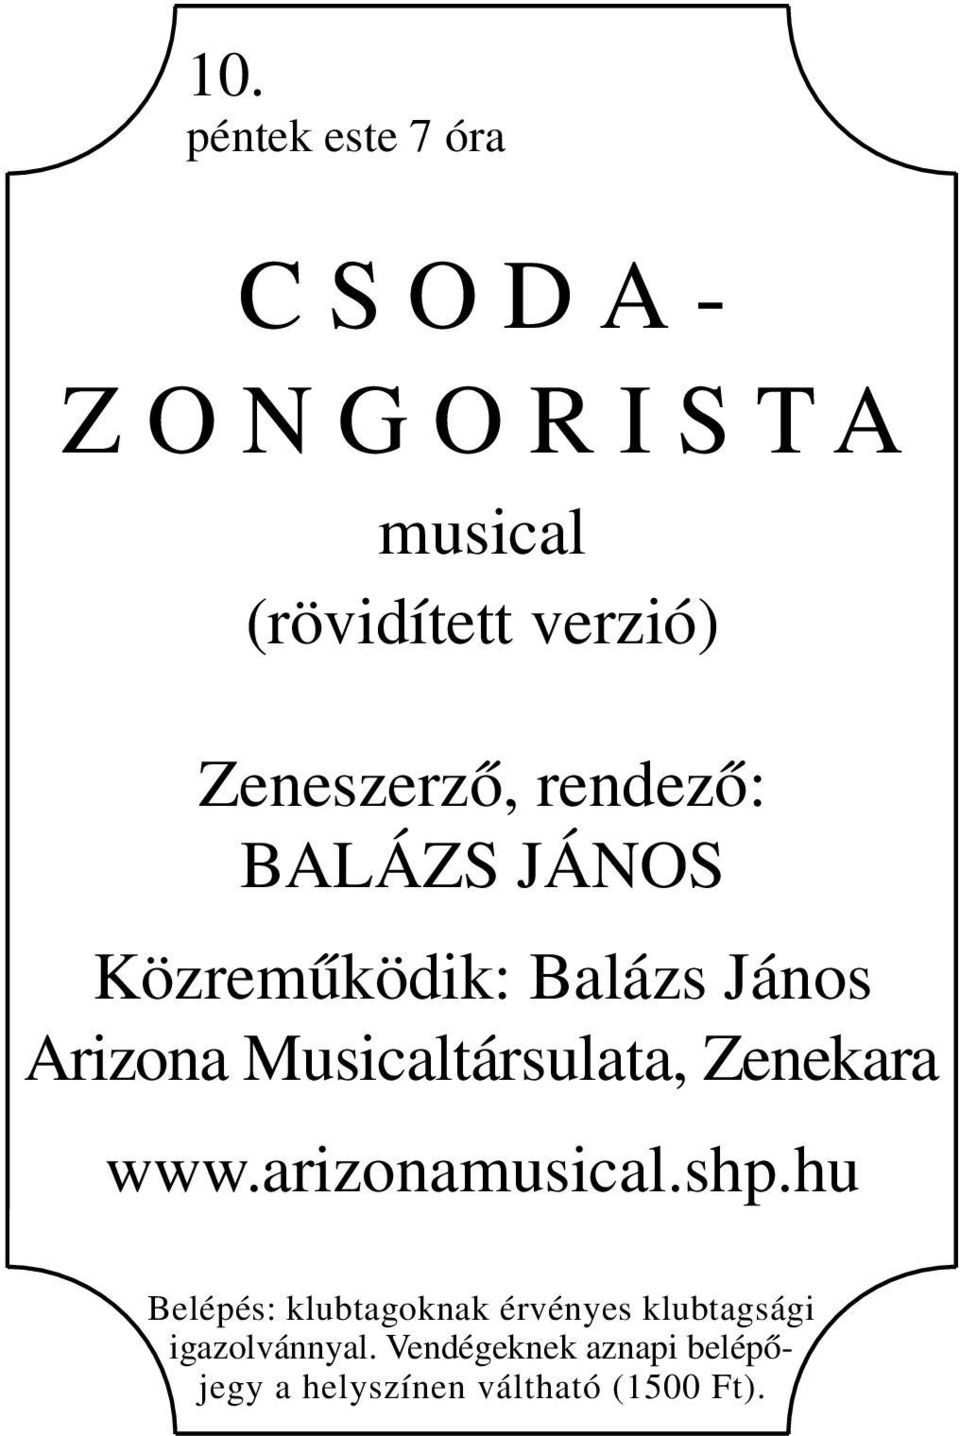 Musicaltársulata, Zenekara www.arizonamusical.shp.